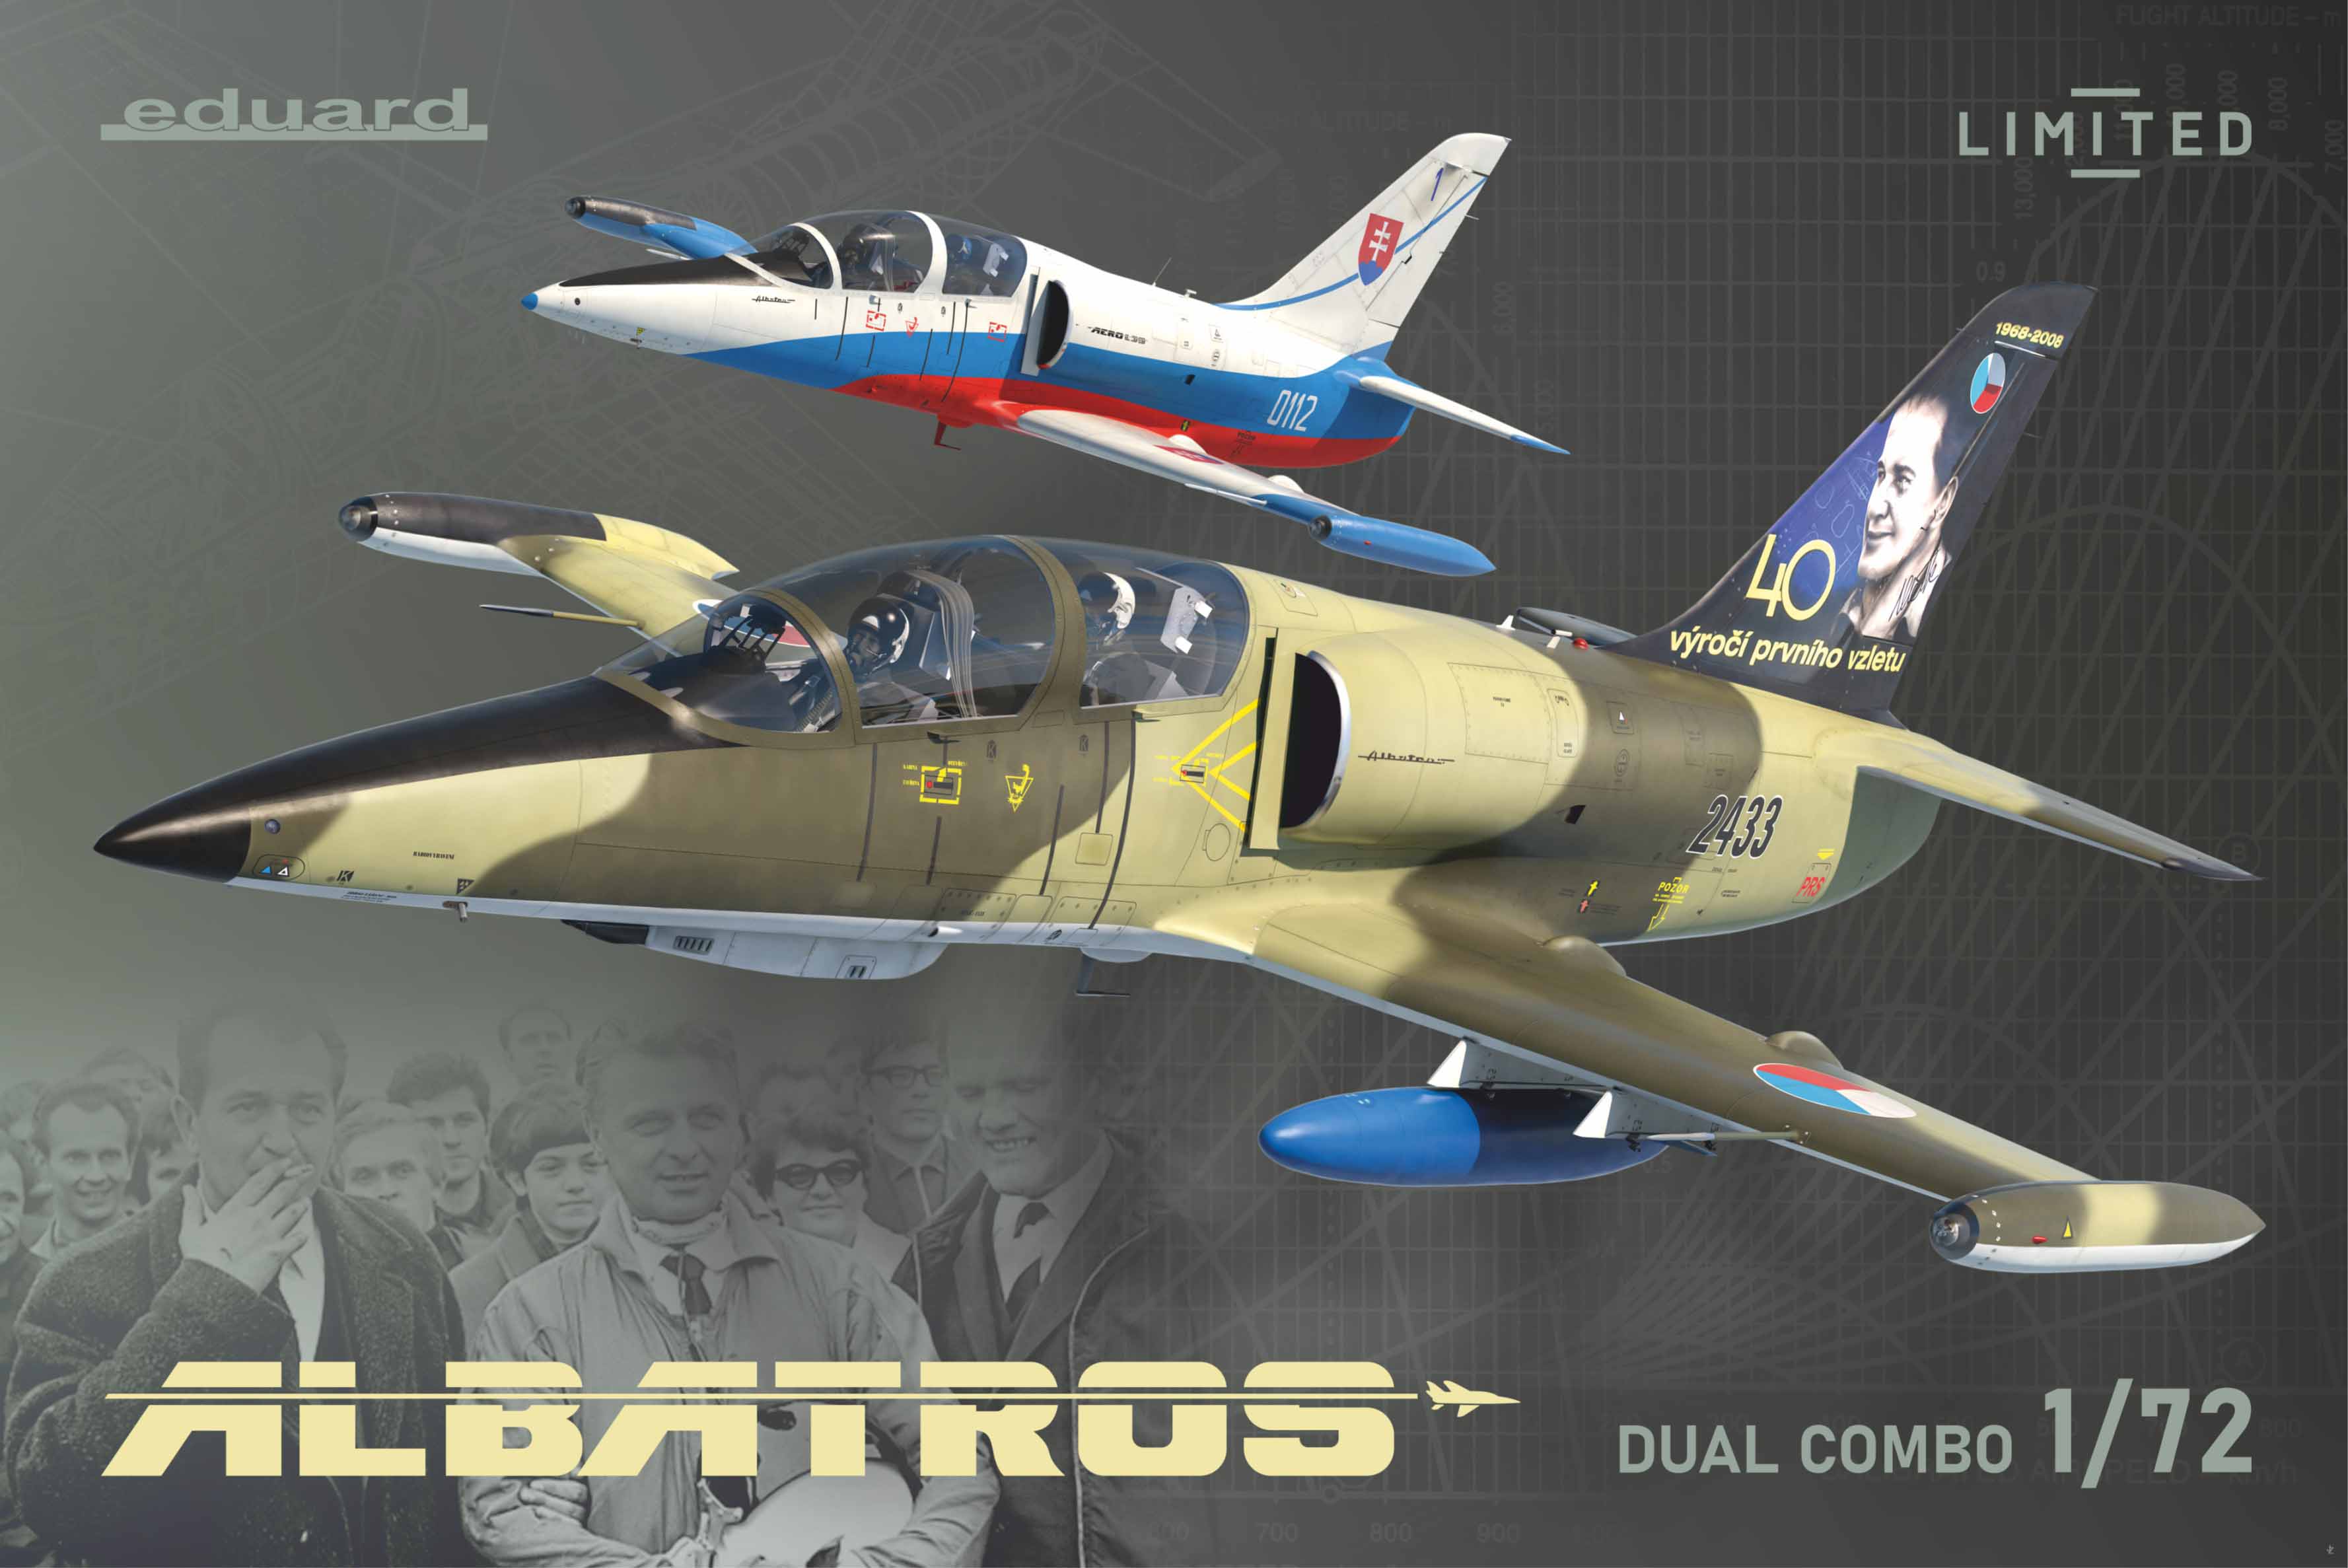 1/72 L-39C, L-39ZA, L-39 ZO ALBATROS (Limited Edition - Dual Combo)